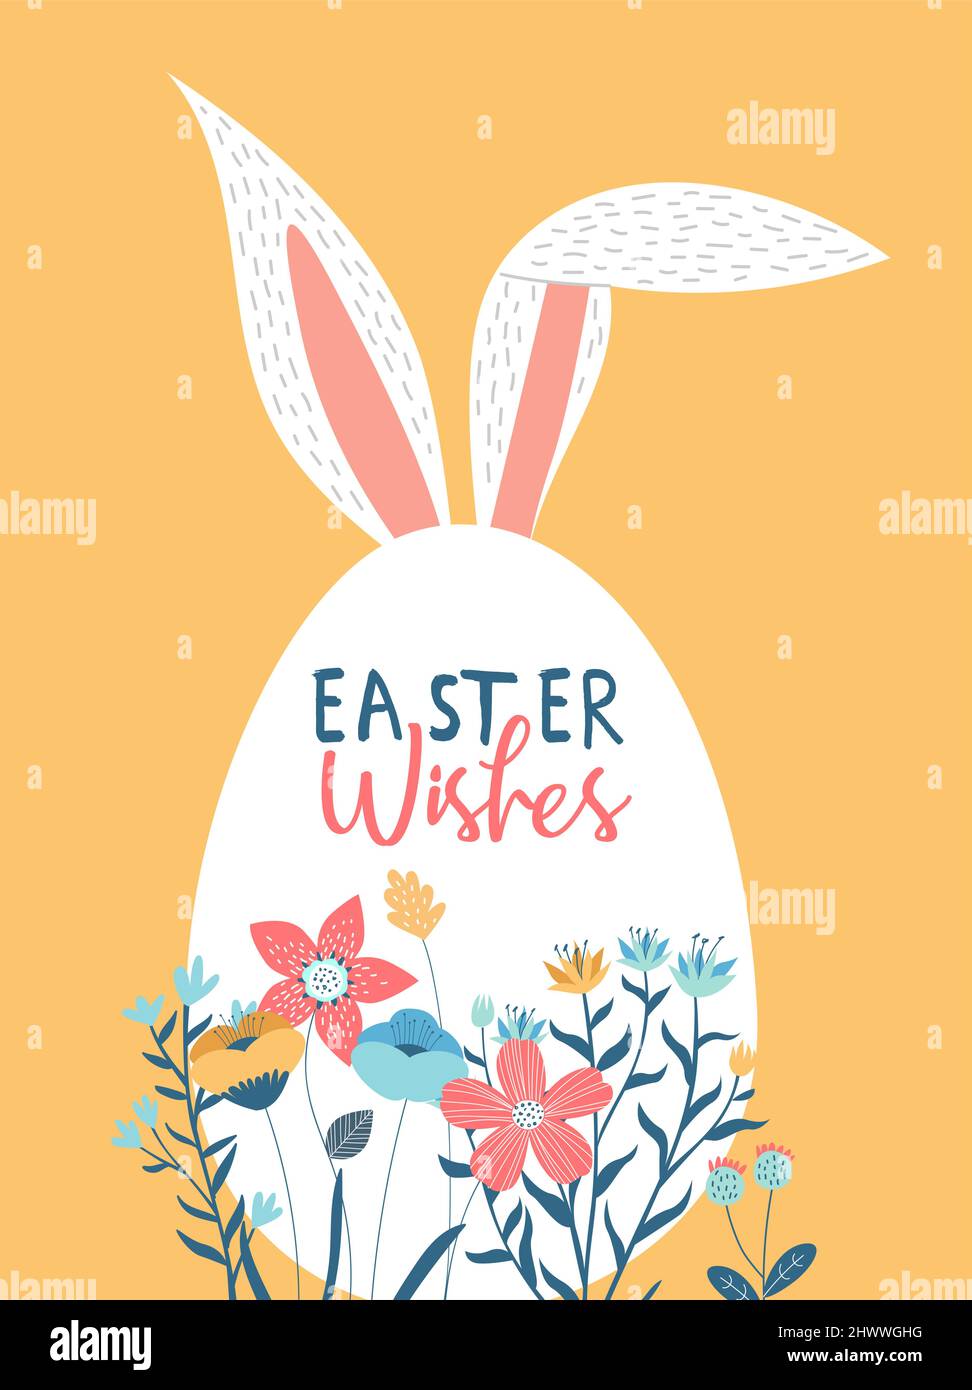 Frohe ostern Grußkarte Illustration von Ei mit Frühlingsblumen und festlichen Feiertag Text Zitat für Feier Veranstaltung oder Party Einladung. Stock Vektor